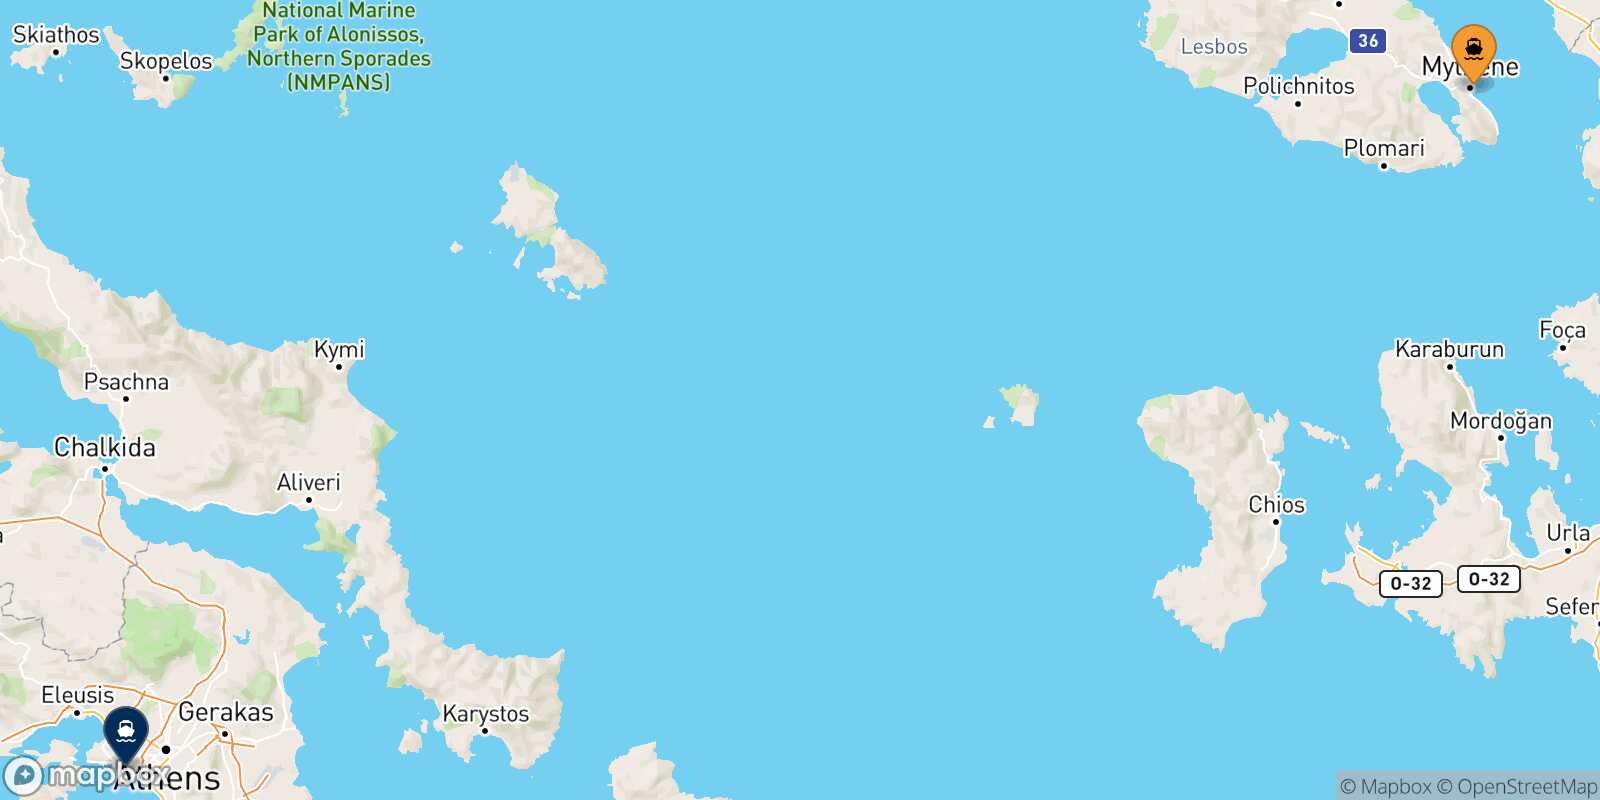 Mapa de la ruta Mytilene (Lesvos) El Pireo